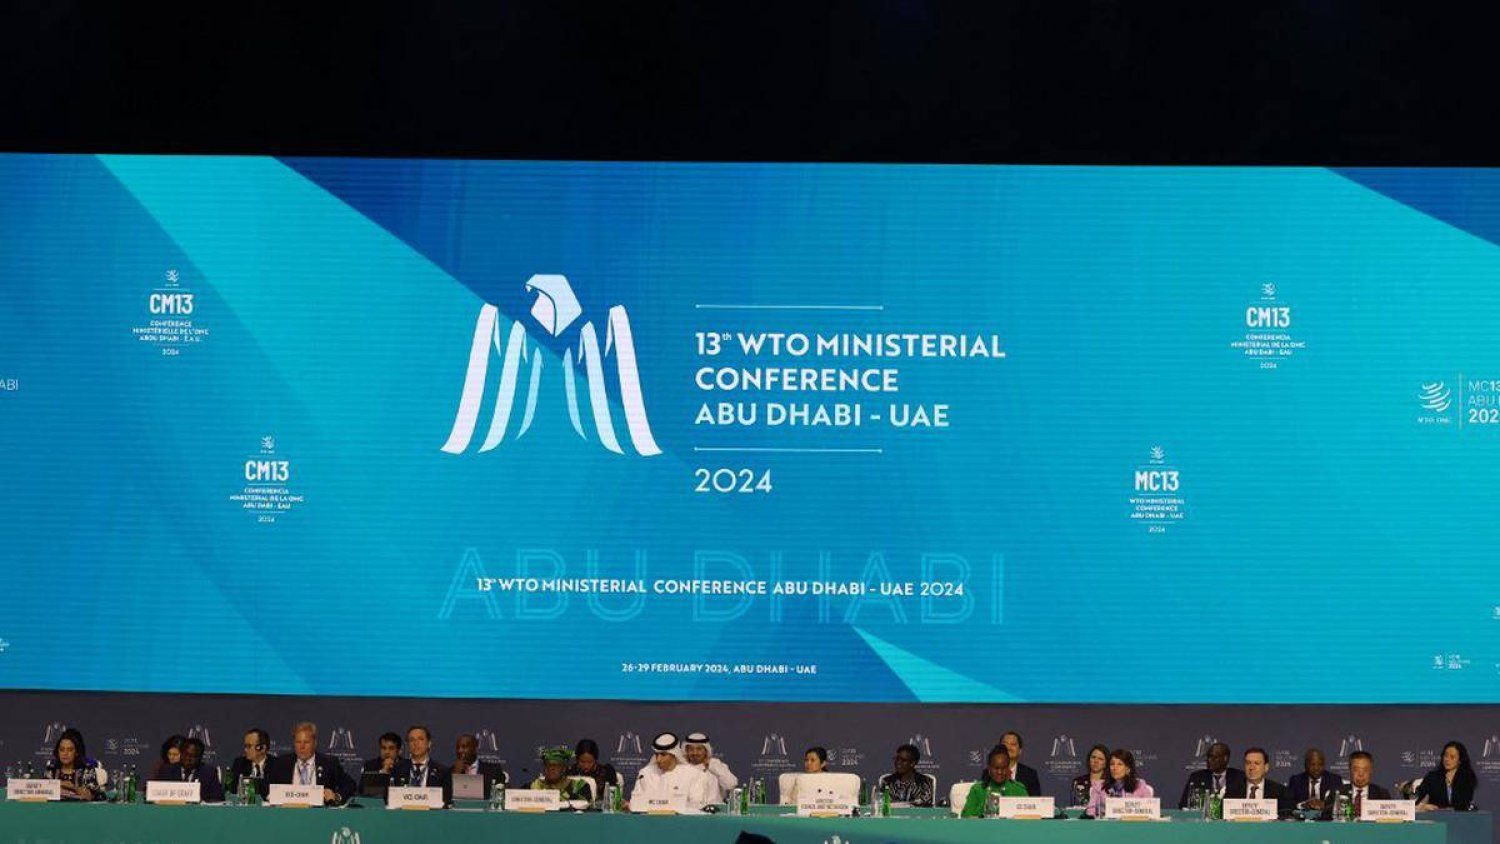 تُظهر الصورة وفوداً تشارك في المؤتمر الوزاري الثالث عشر لمنظمة التجارة العالمية بأبو ظبي في 26 فبراير 2024 (وكالة الصحافة الفرنسية)